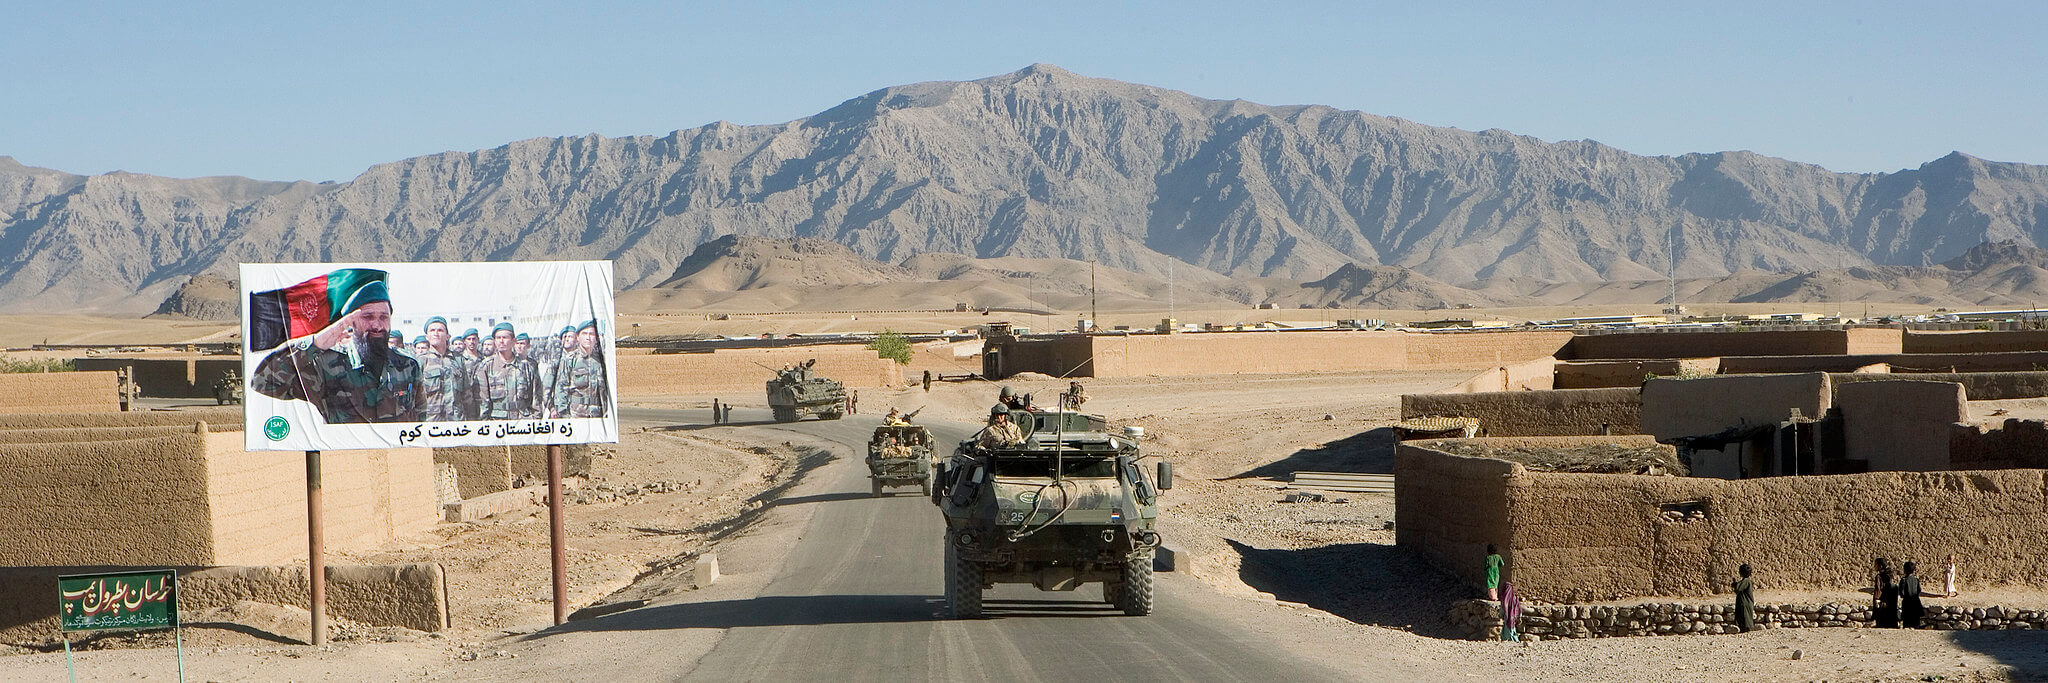 Kamminga - Eenheden van 42 Bataljon Limburgse jagers, in samenwerking met de Afghan National army in Afghanistan in 2007. ResoluteSupportMedia - Flickr